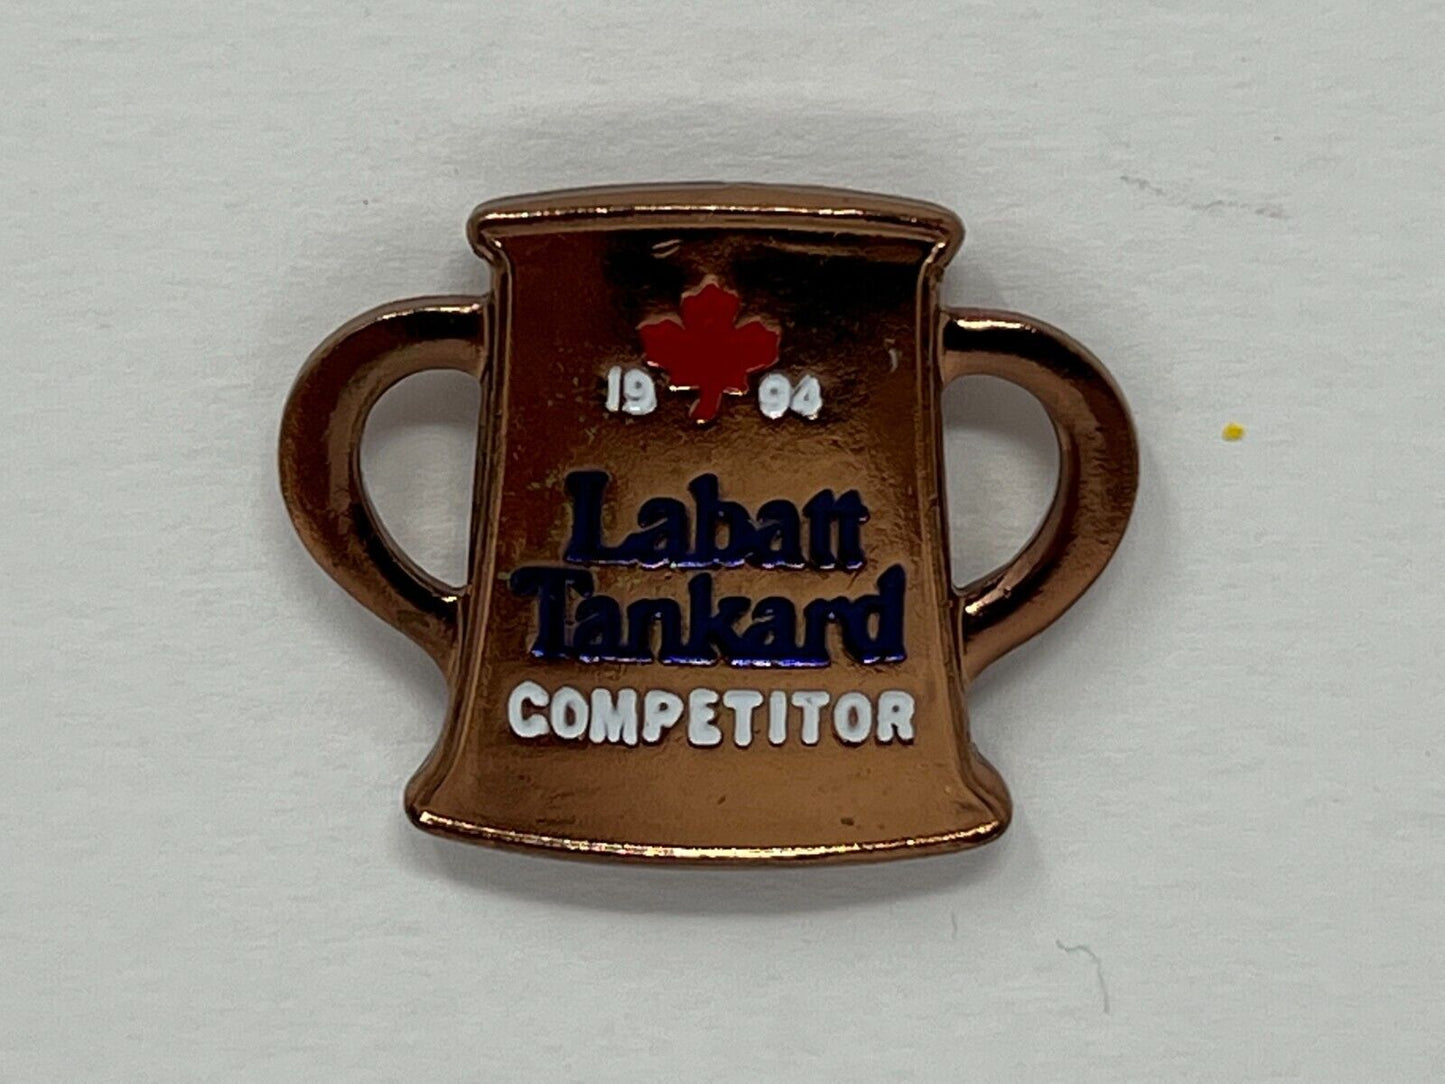 Labatt Tankard 1994 Competitor Beer & Liquor Lapel Pin